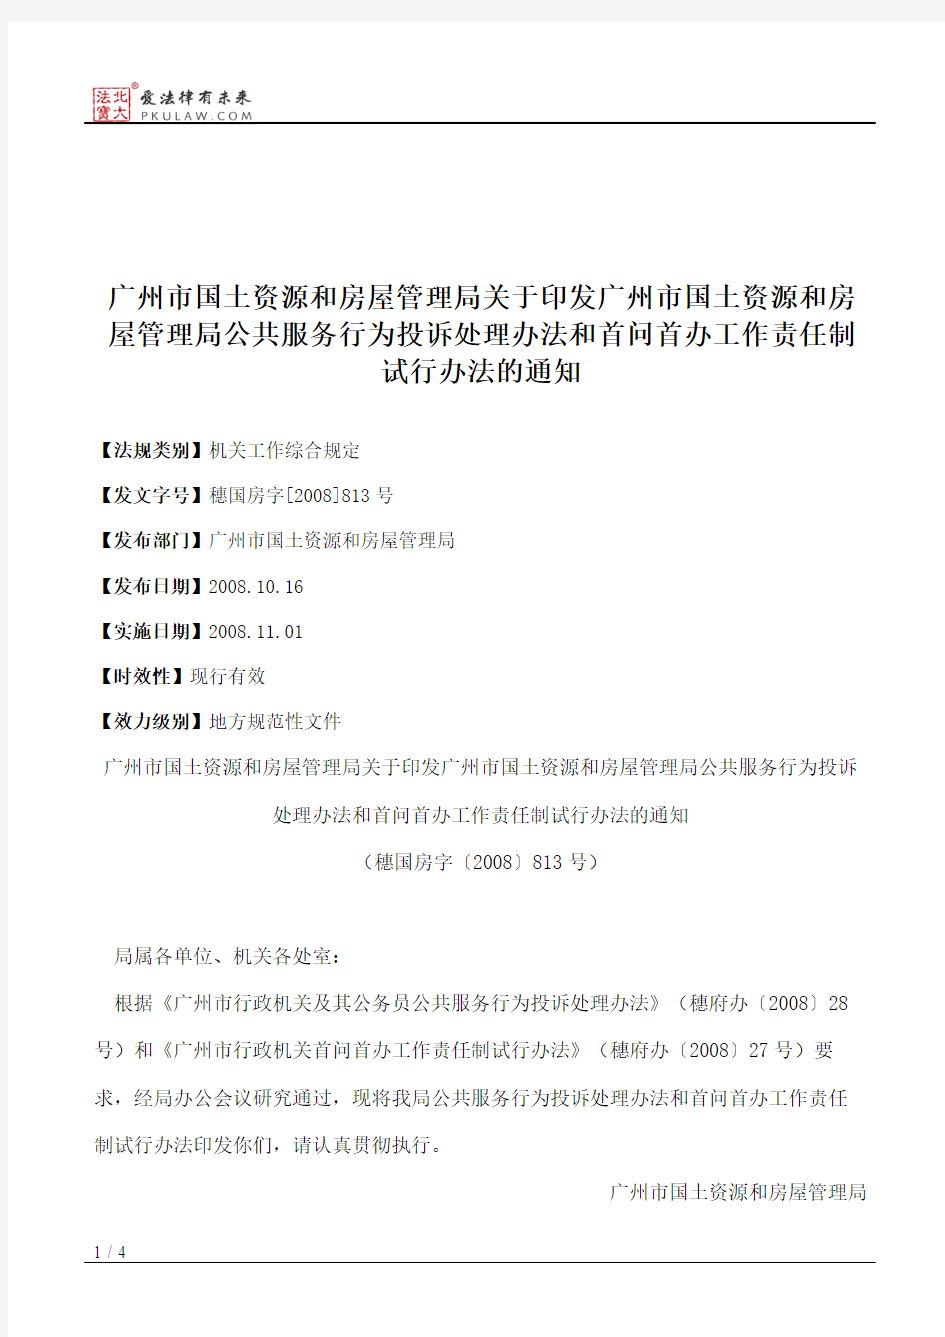 广州市国土资源和房屋管理局关于印发广州市国土资源和房屋管理局